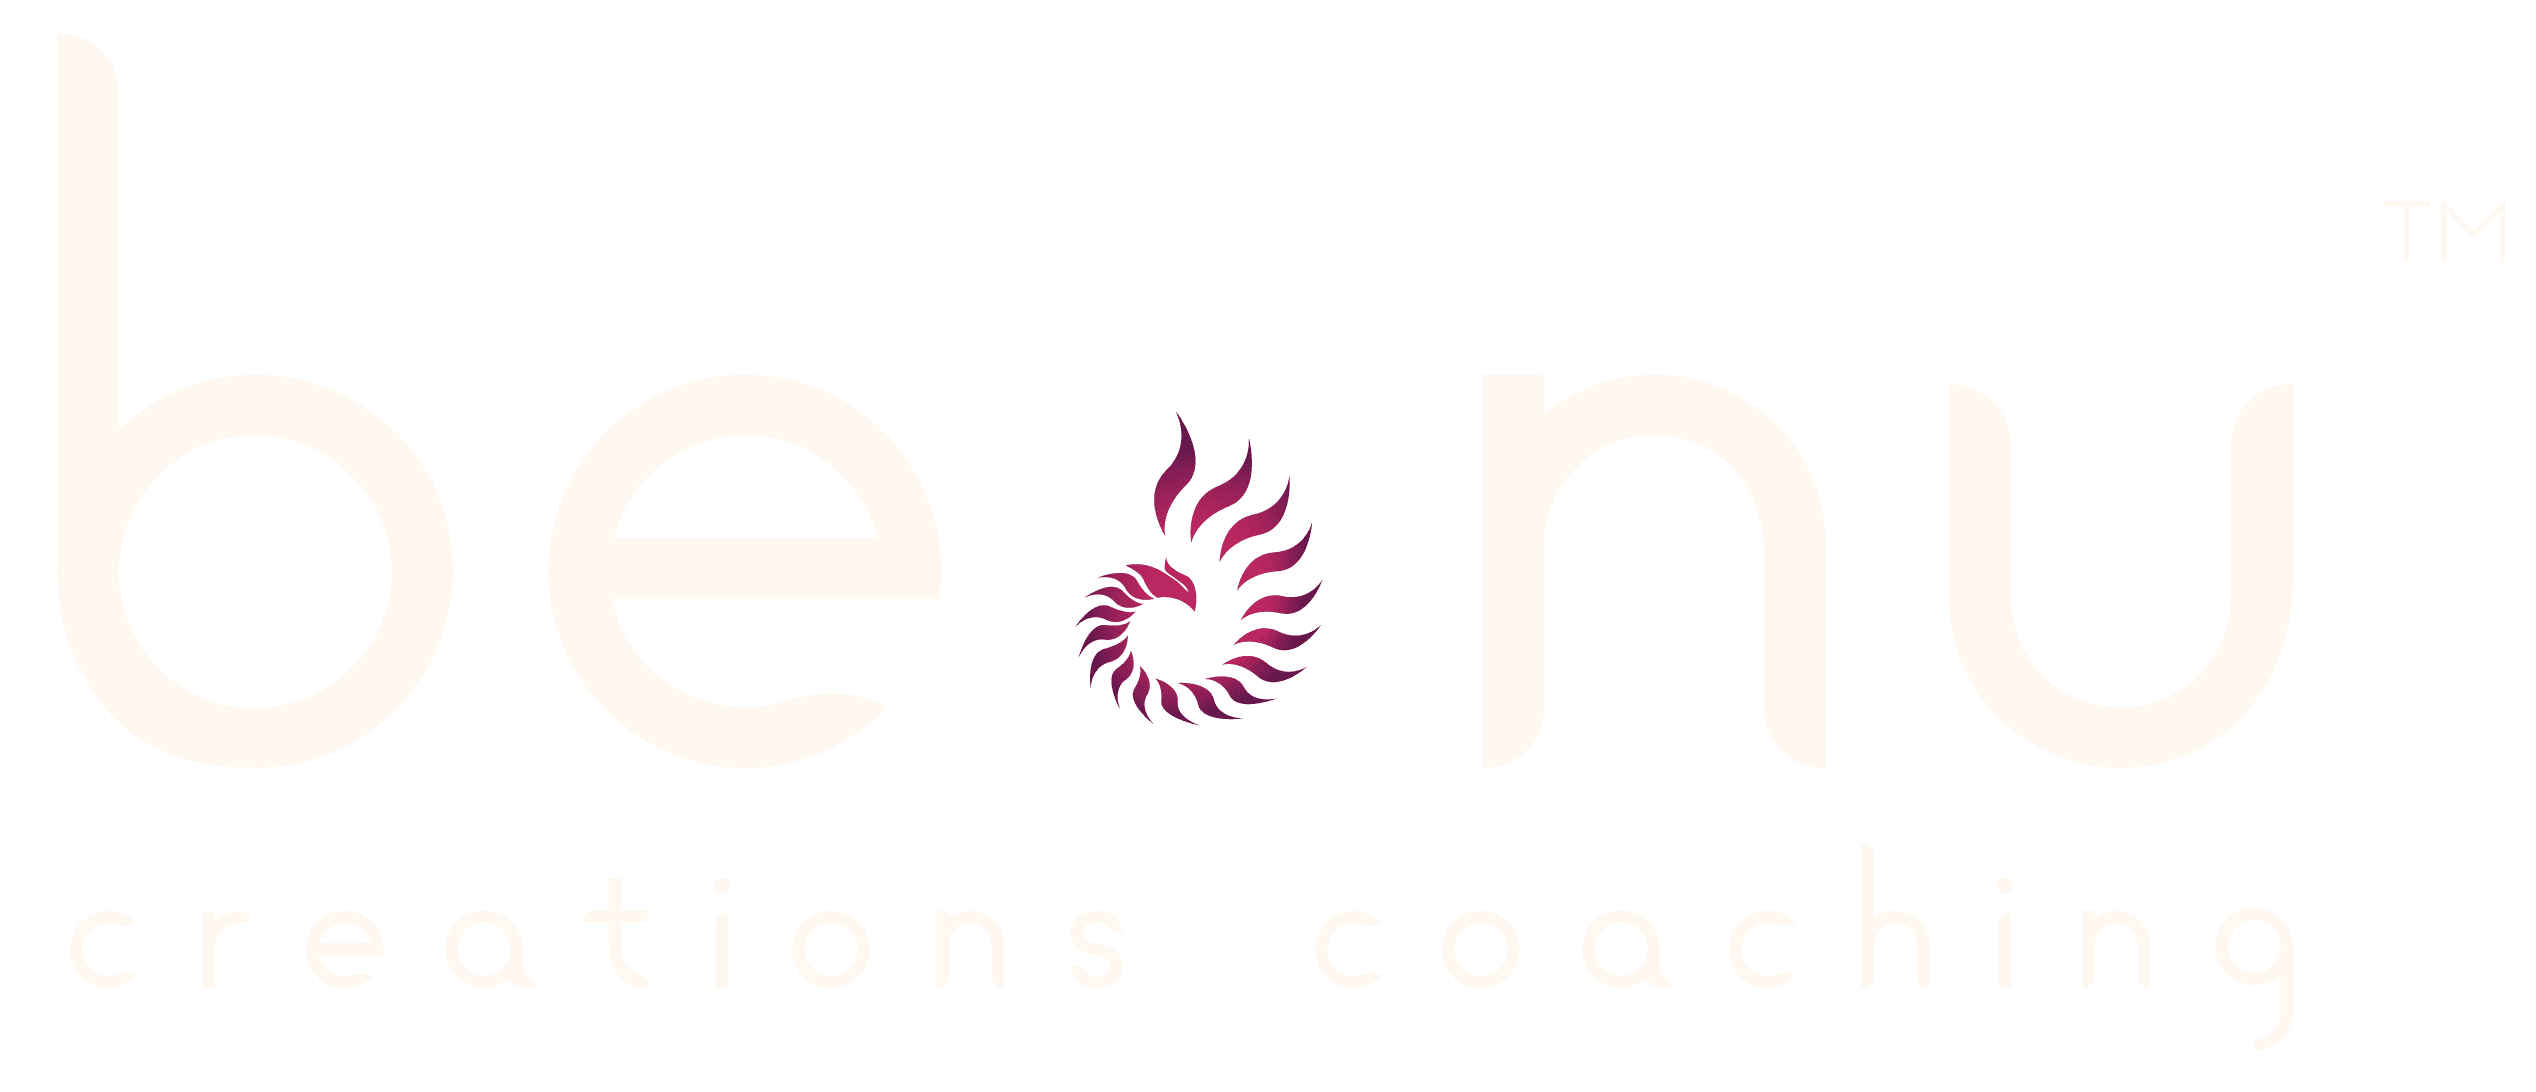 benu creations coaching logo chrysallis horizontal logo